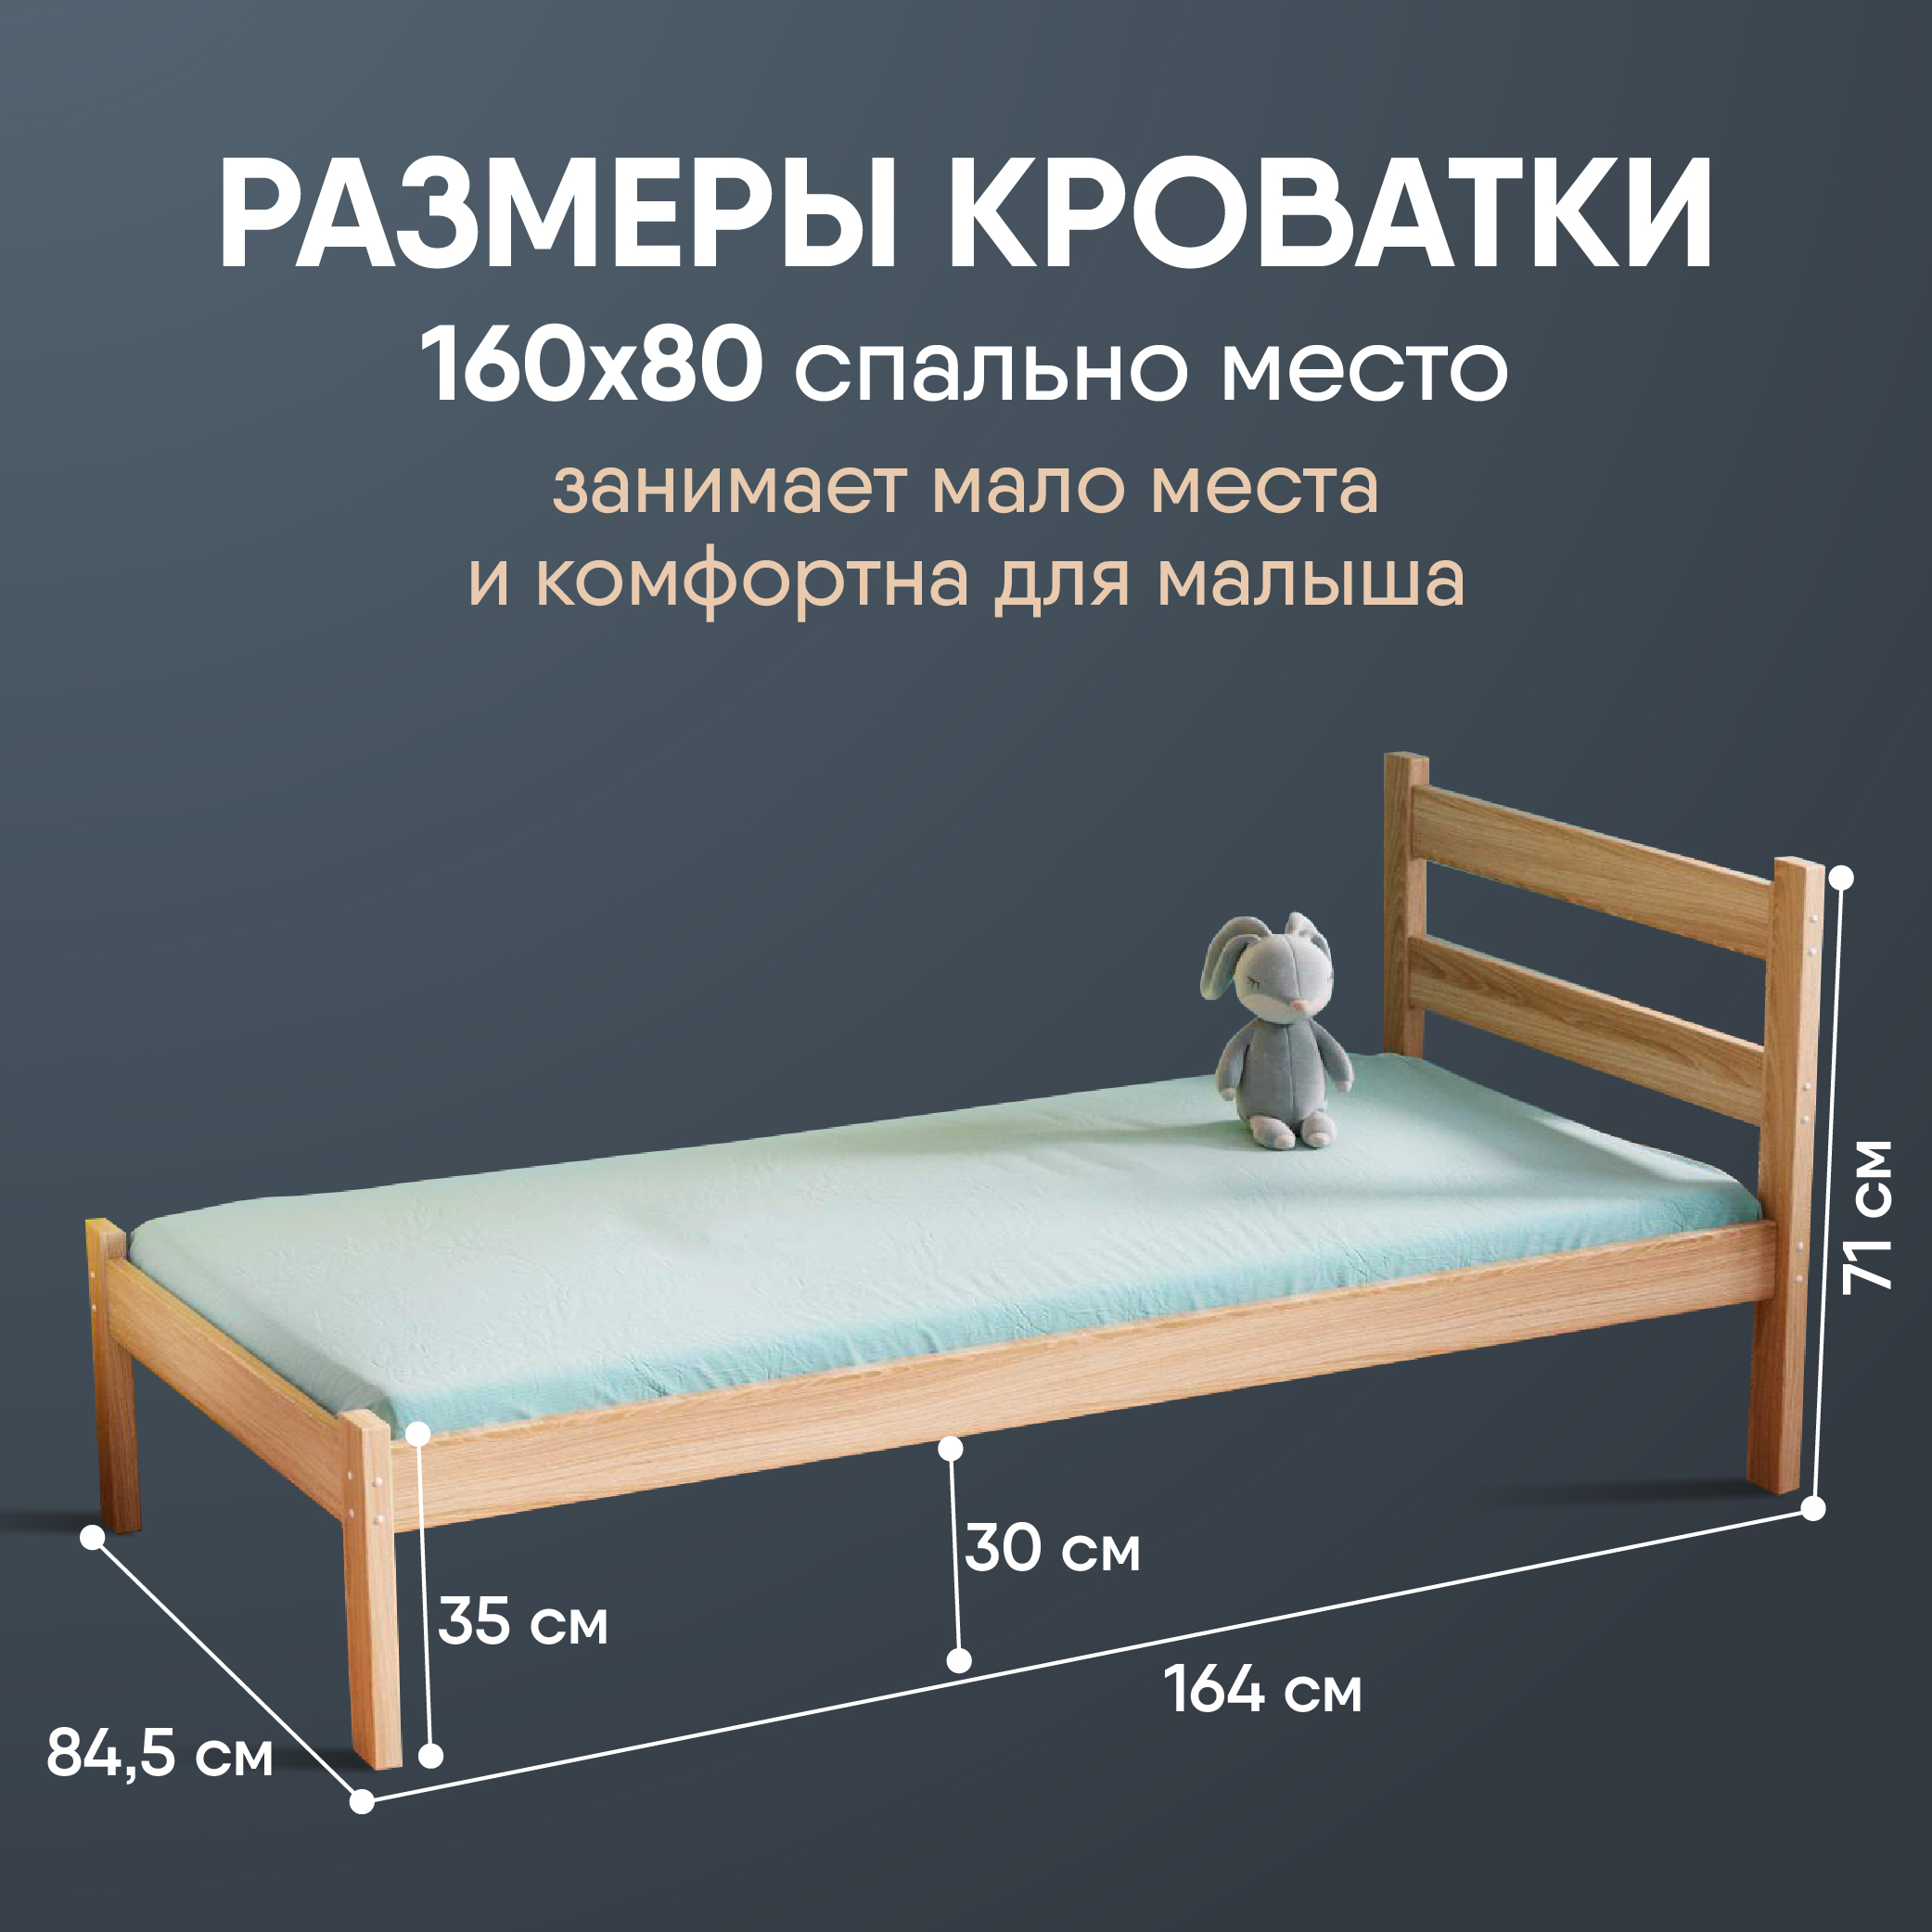 Кровать детская SleepAngel Stanley Light, 200х90 см, без покраски деревянная односпальная кровать детская sleepangel lucy 200х90 см серая диван кровать выкатной от 3 лет